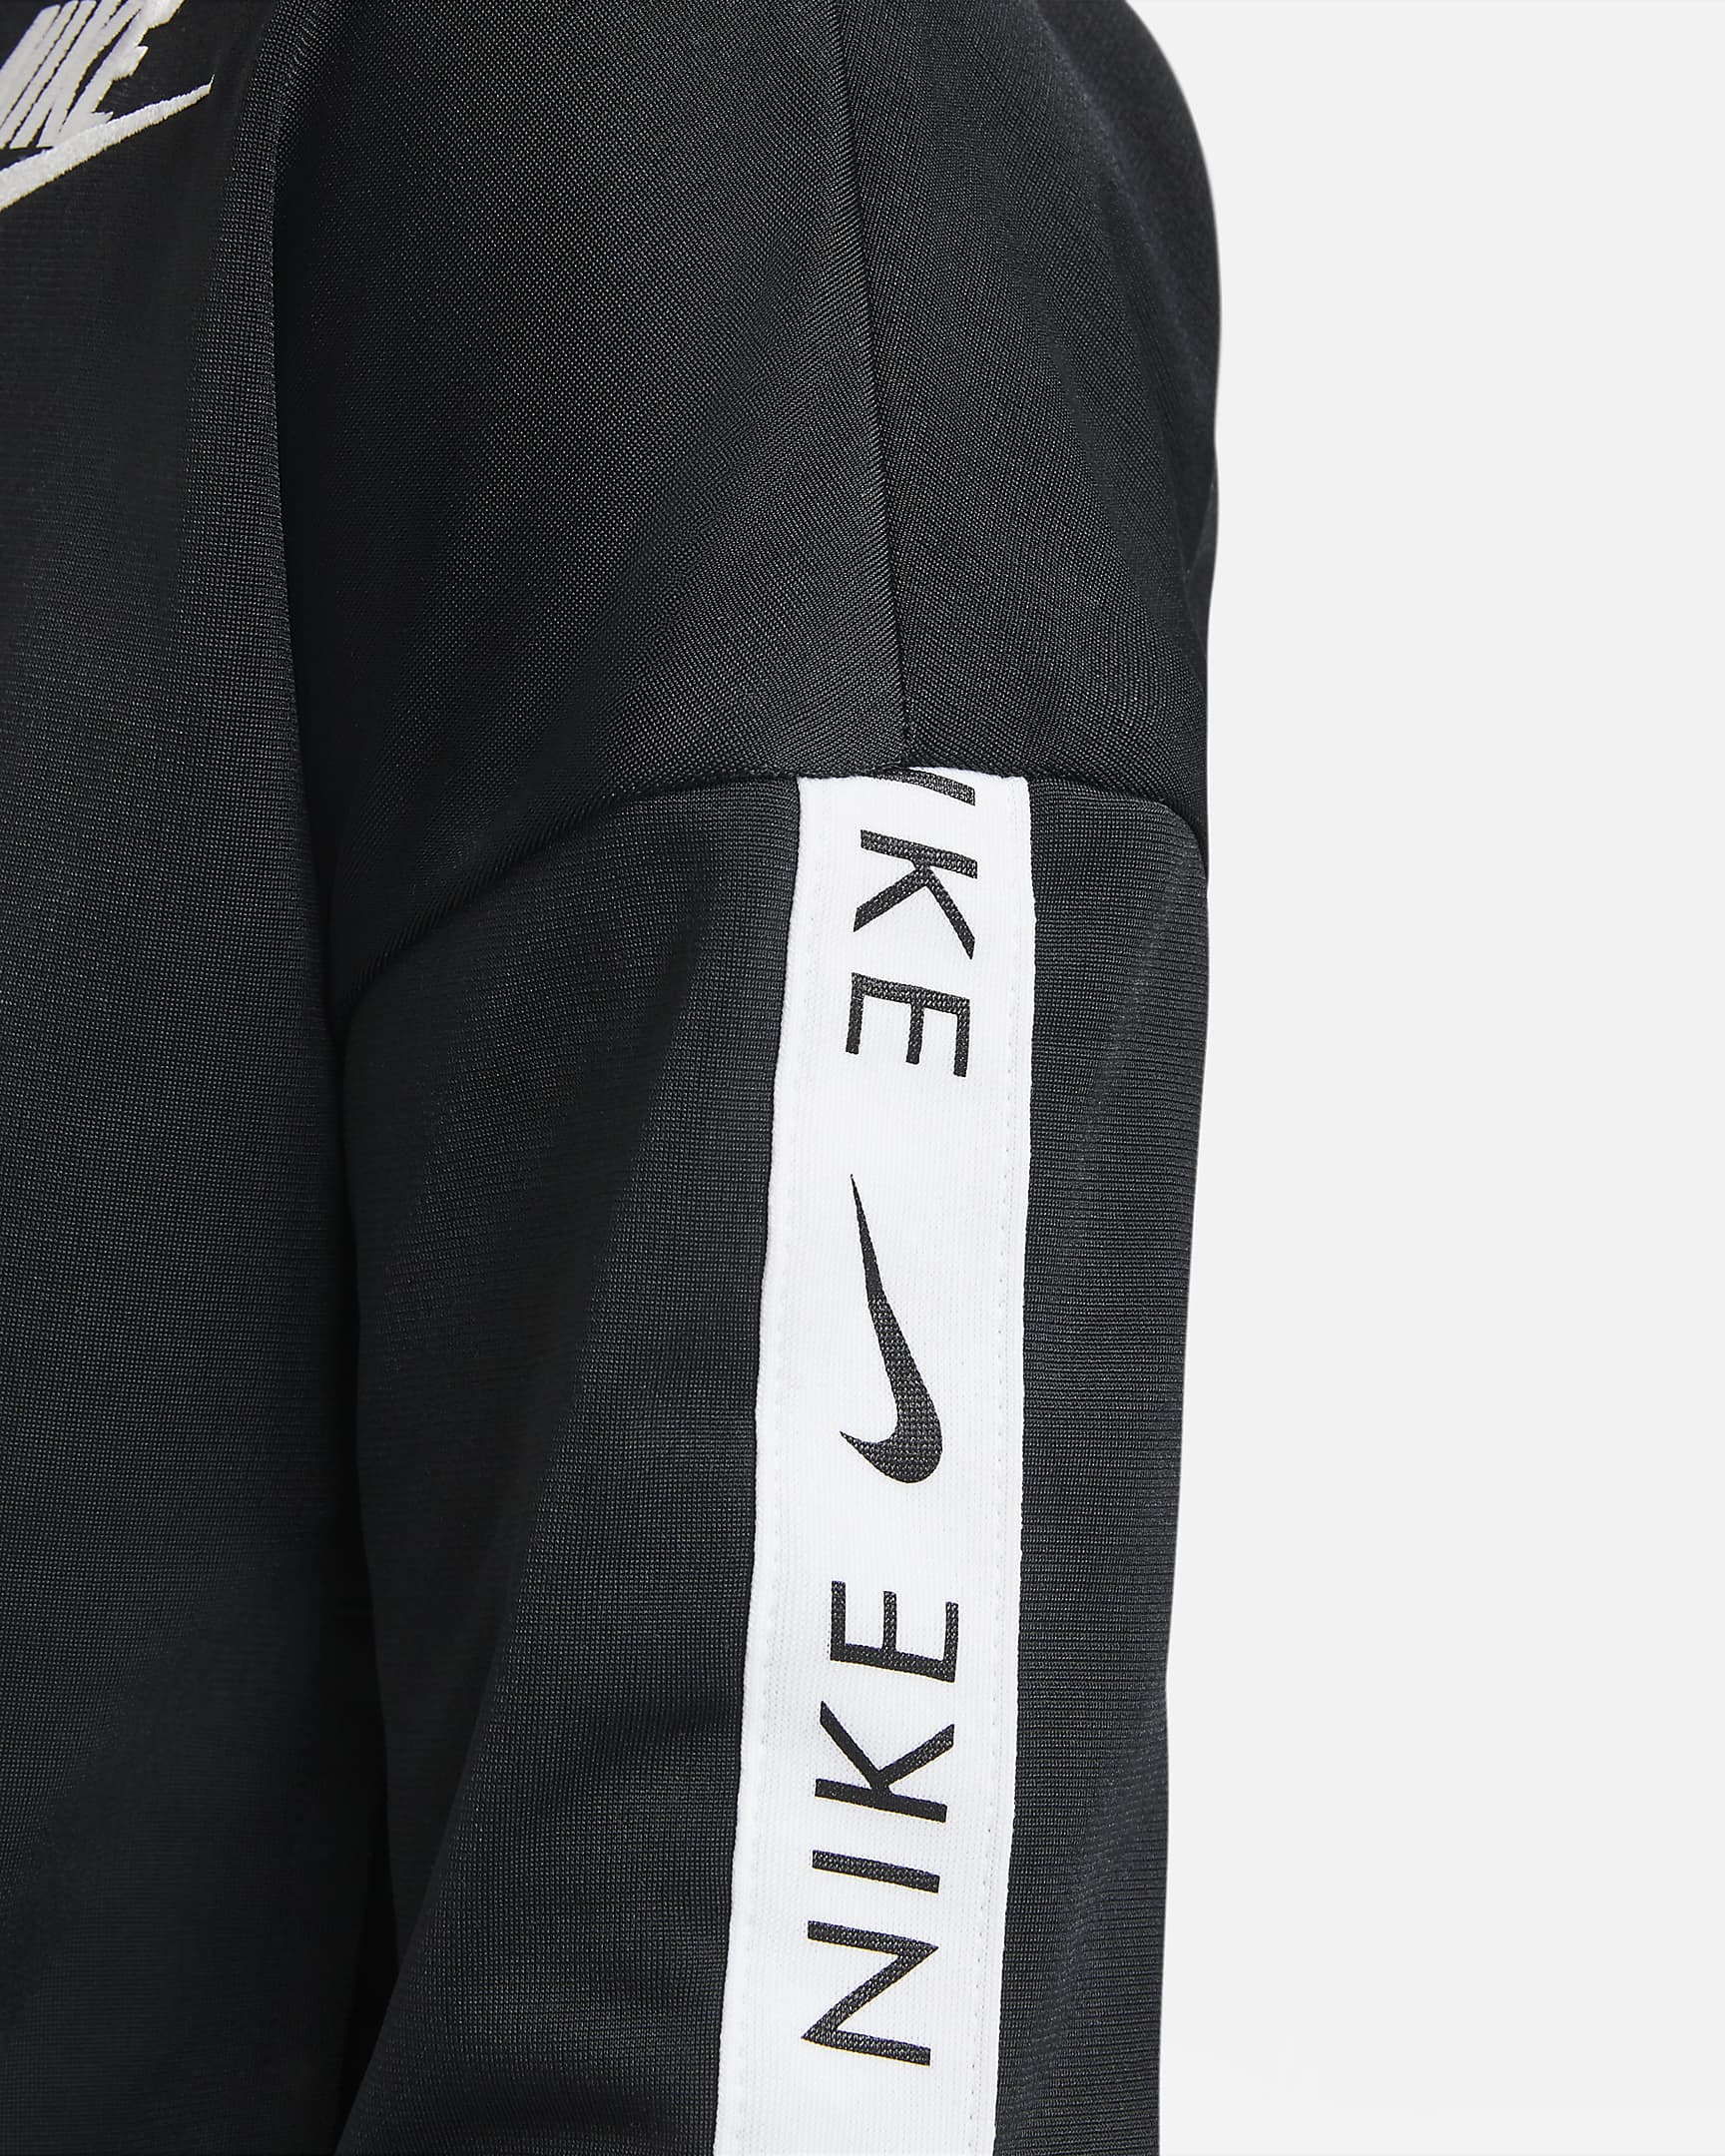 Survêtement Nike Sportswear pour ado - Noir/Blanc/Blanc